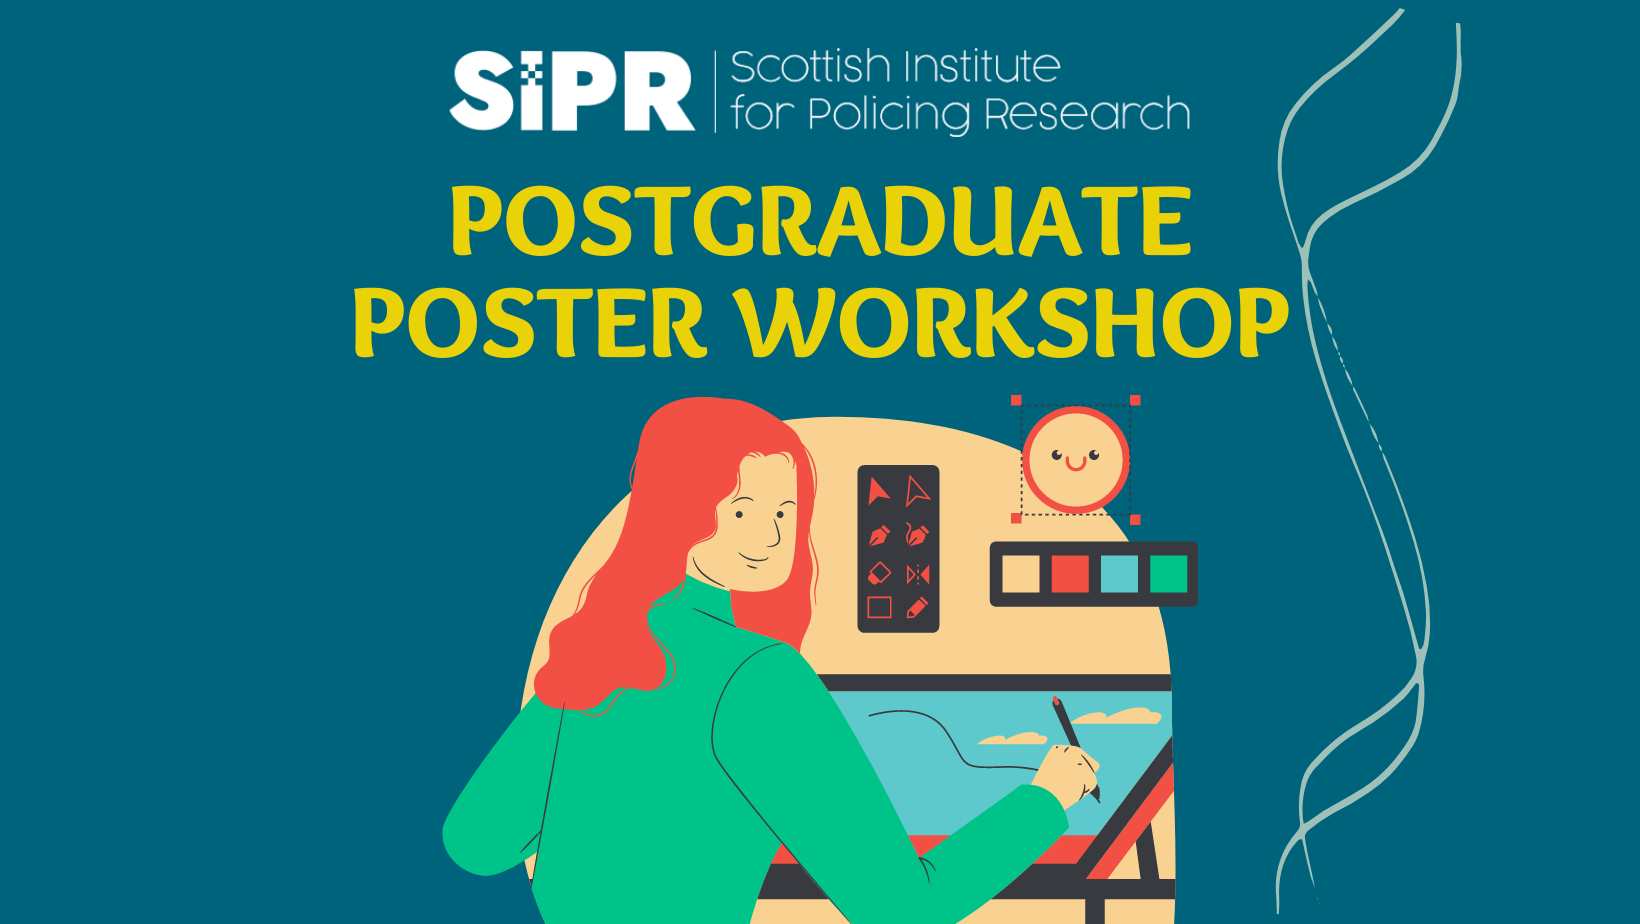 PG Poster Workshop Image